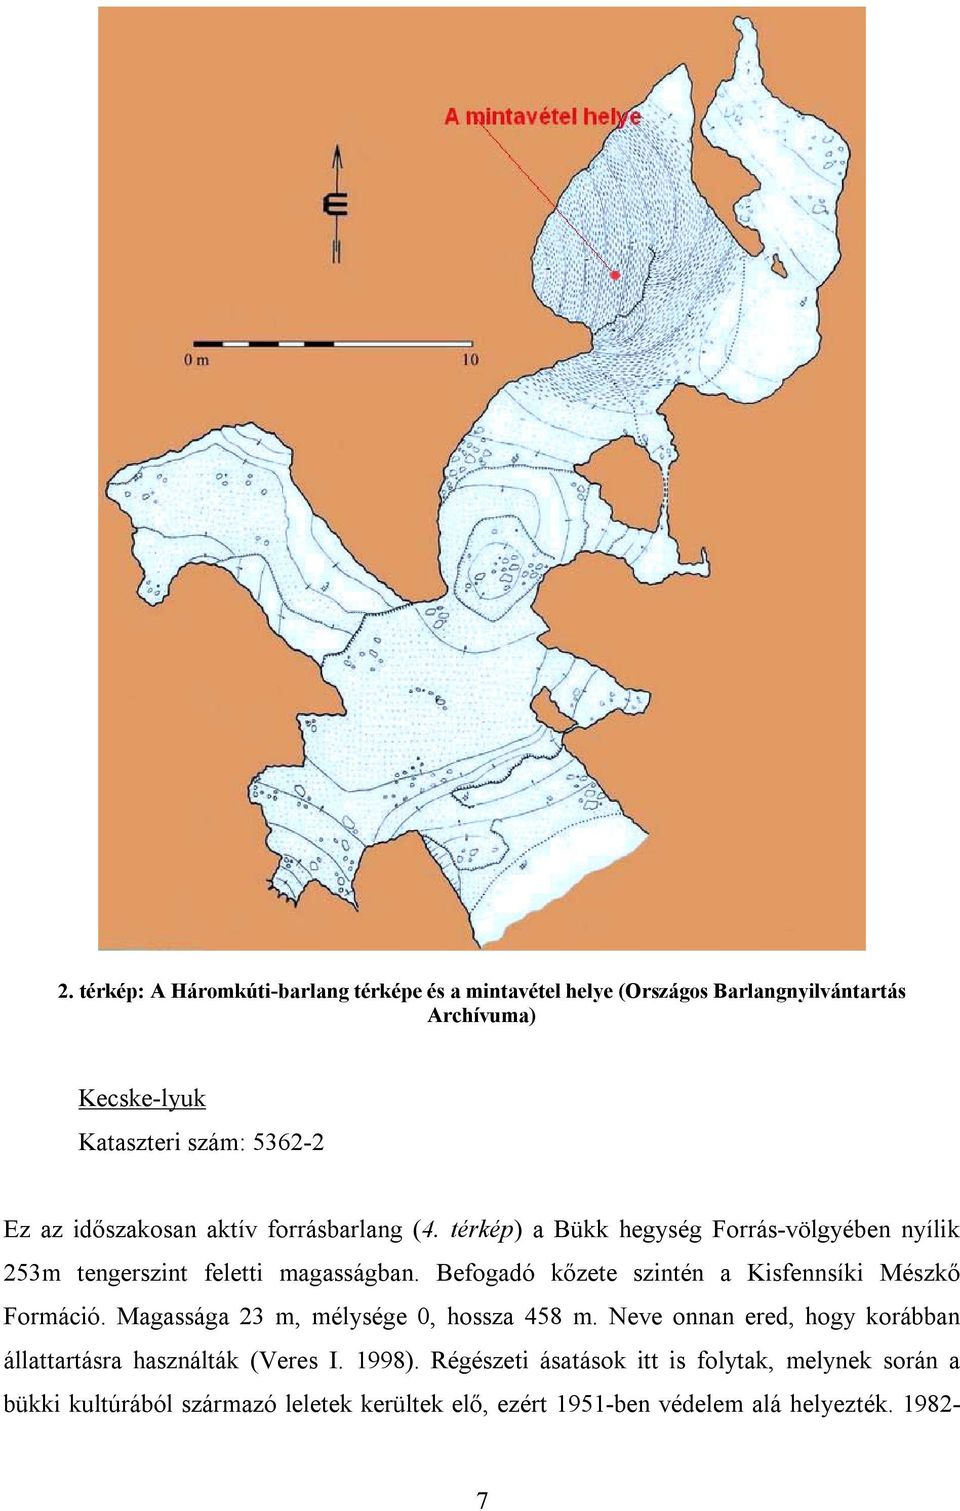 Befogadó kőzete szintén a Kisfennsíki Mészkő Formáció. Magassága 23 m, mélysége 0, hossza 458 m.